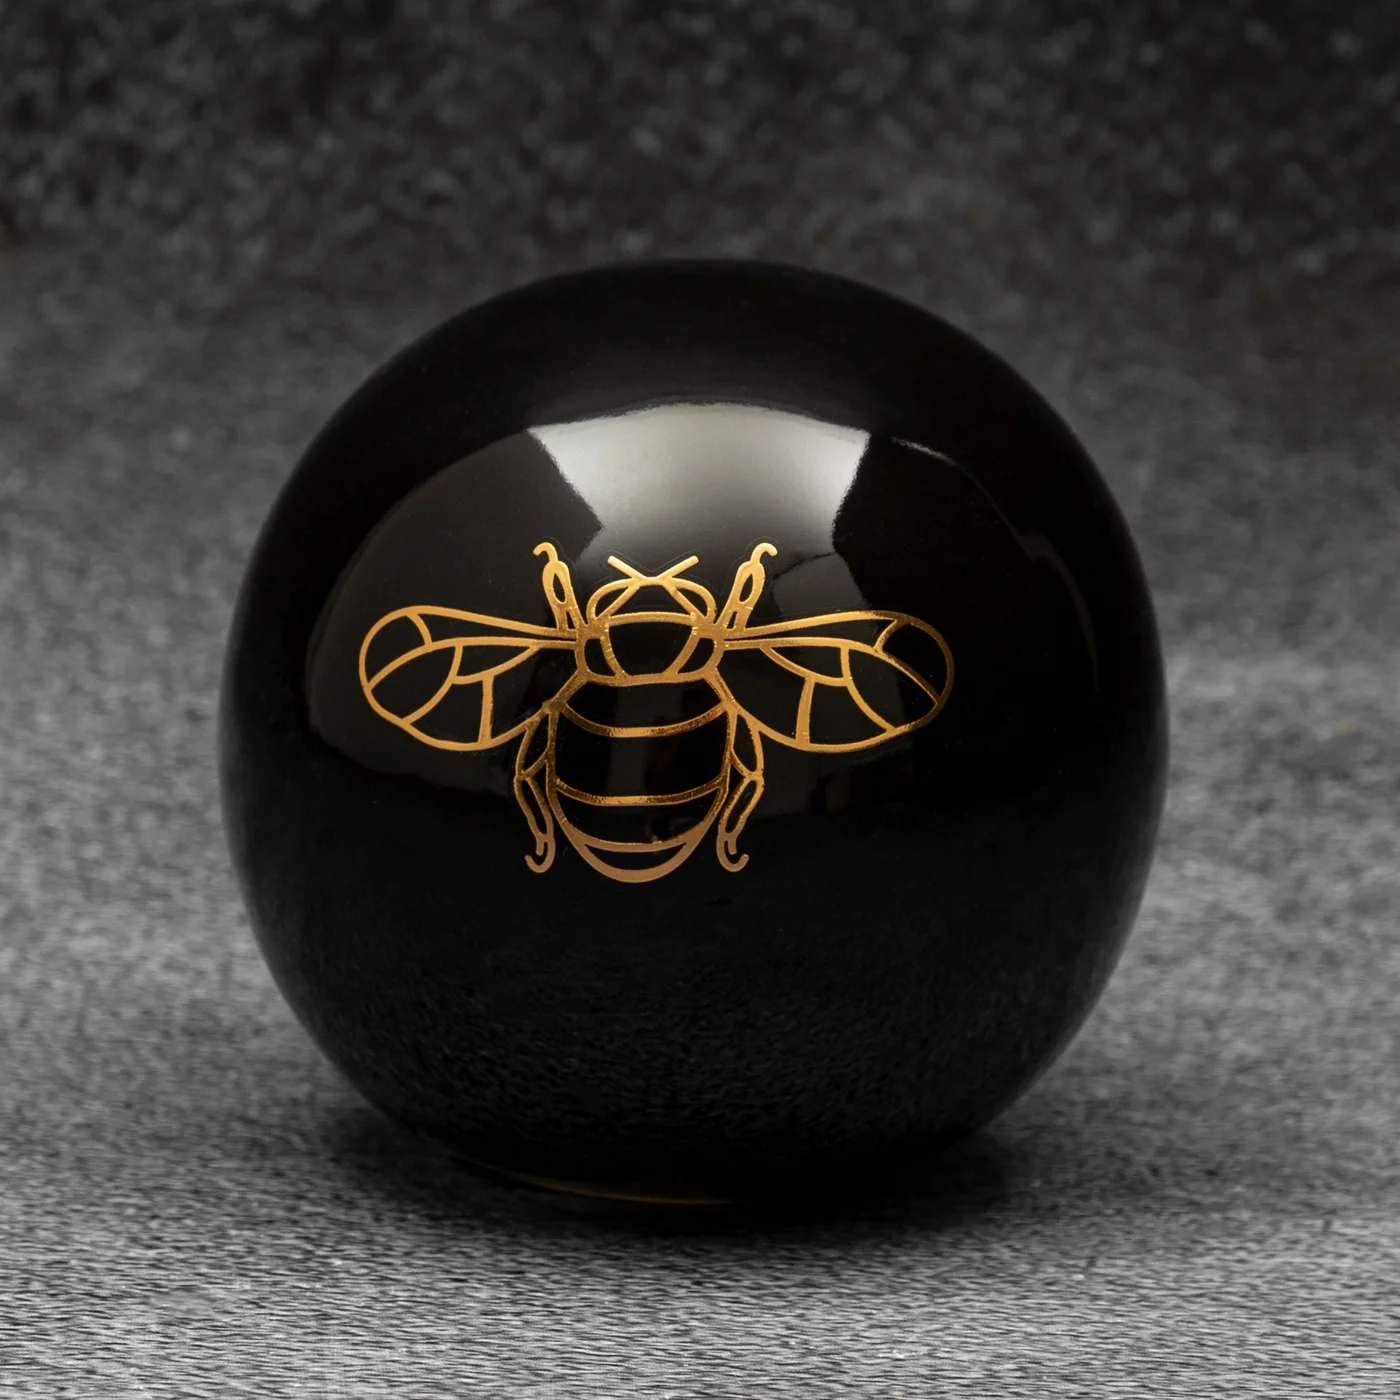 Kula ceramiczna z nadrukiem złotej pszczoły